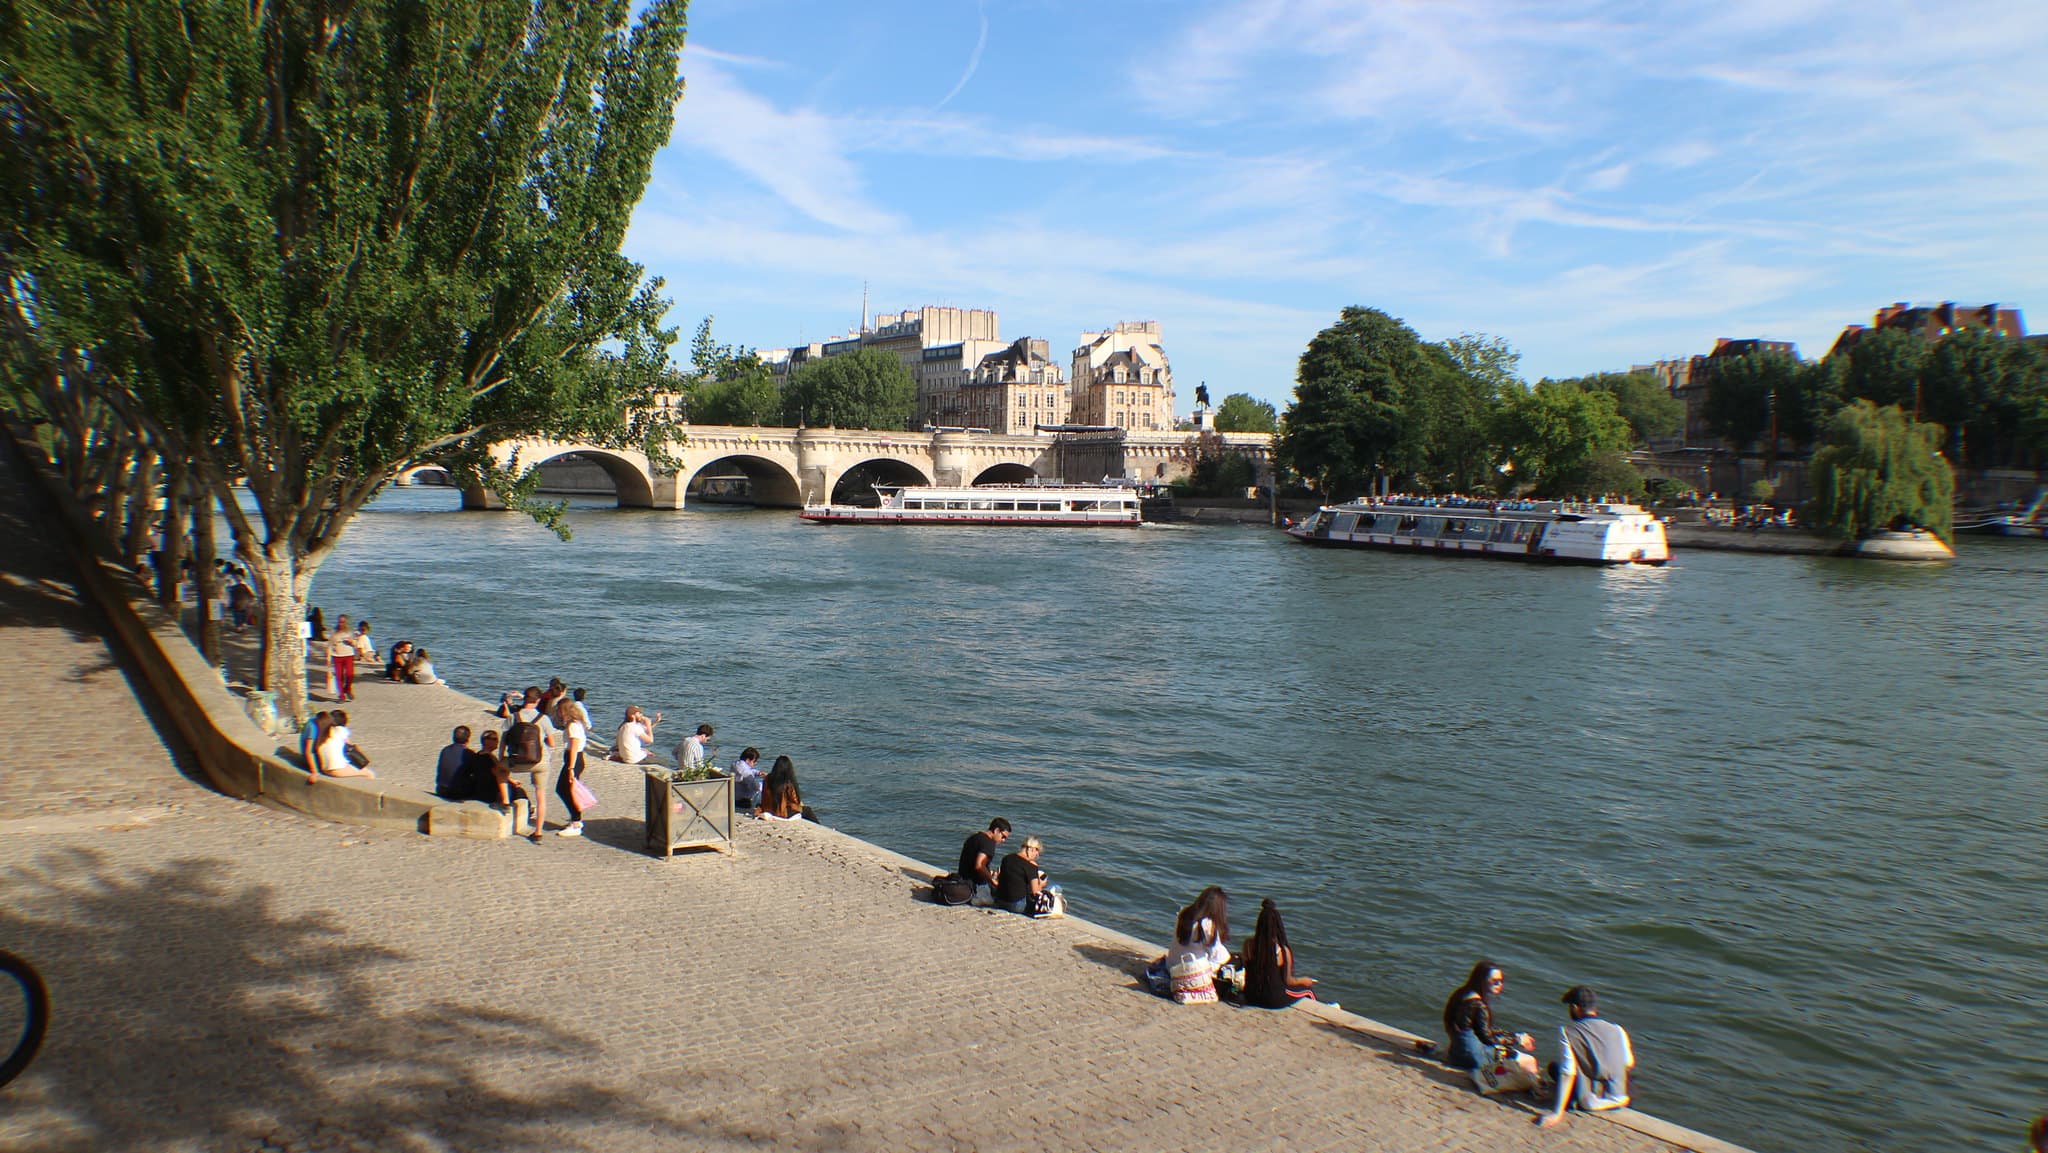 paris: la baignade dans la seine en bonne voie selon les premiers résultats de la qualité de l'eau